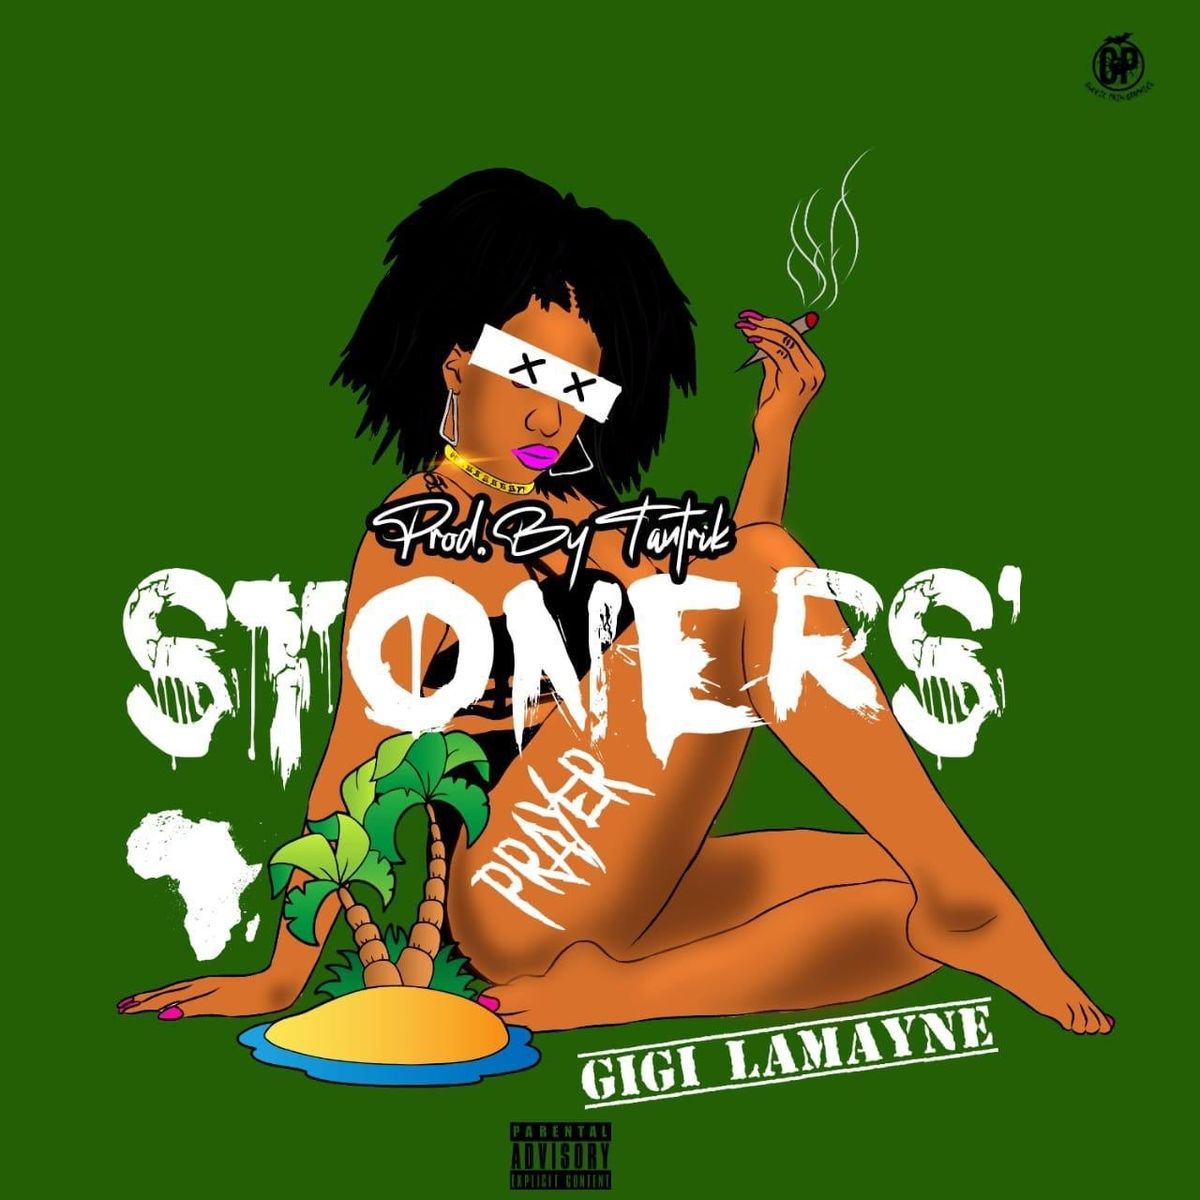 Artwork for Gigi Lamayne's new single: an illustration of Gigi Lamayne smoking pot with floating text.